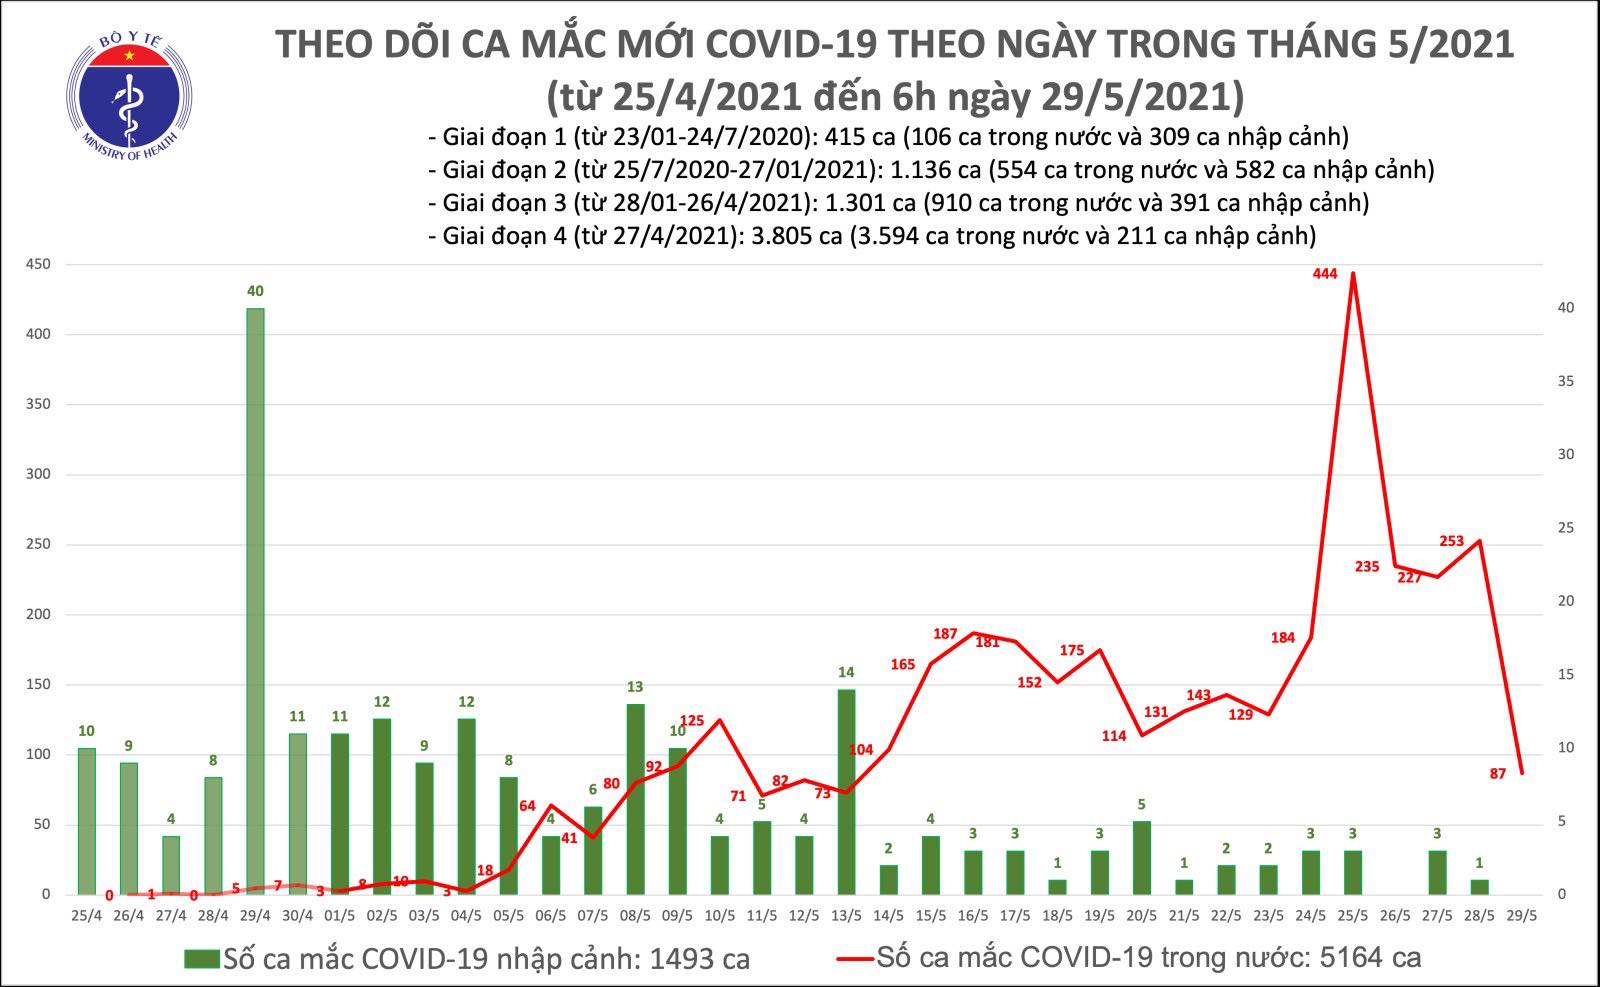 Sáng 29/5: Thêm 87 ca mắc COVID-19 trong nước, Bắc Ninh và Bắc Giang chiếm 84 ca